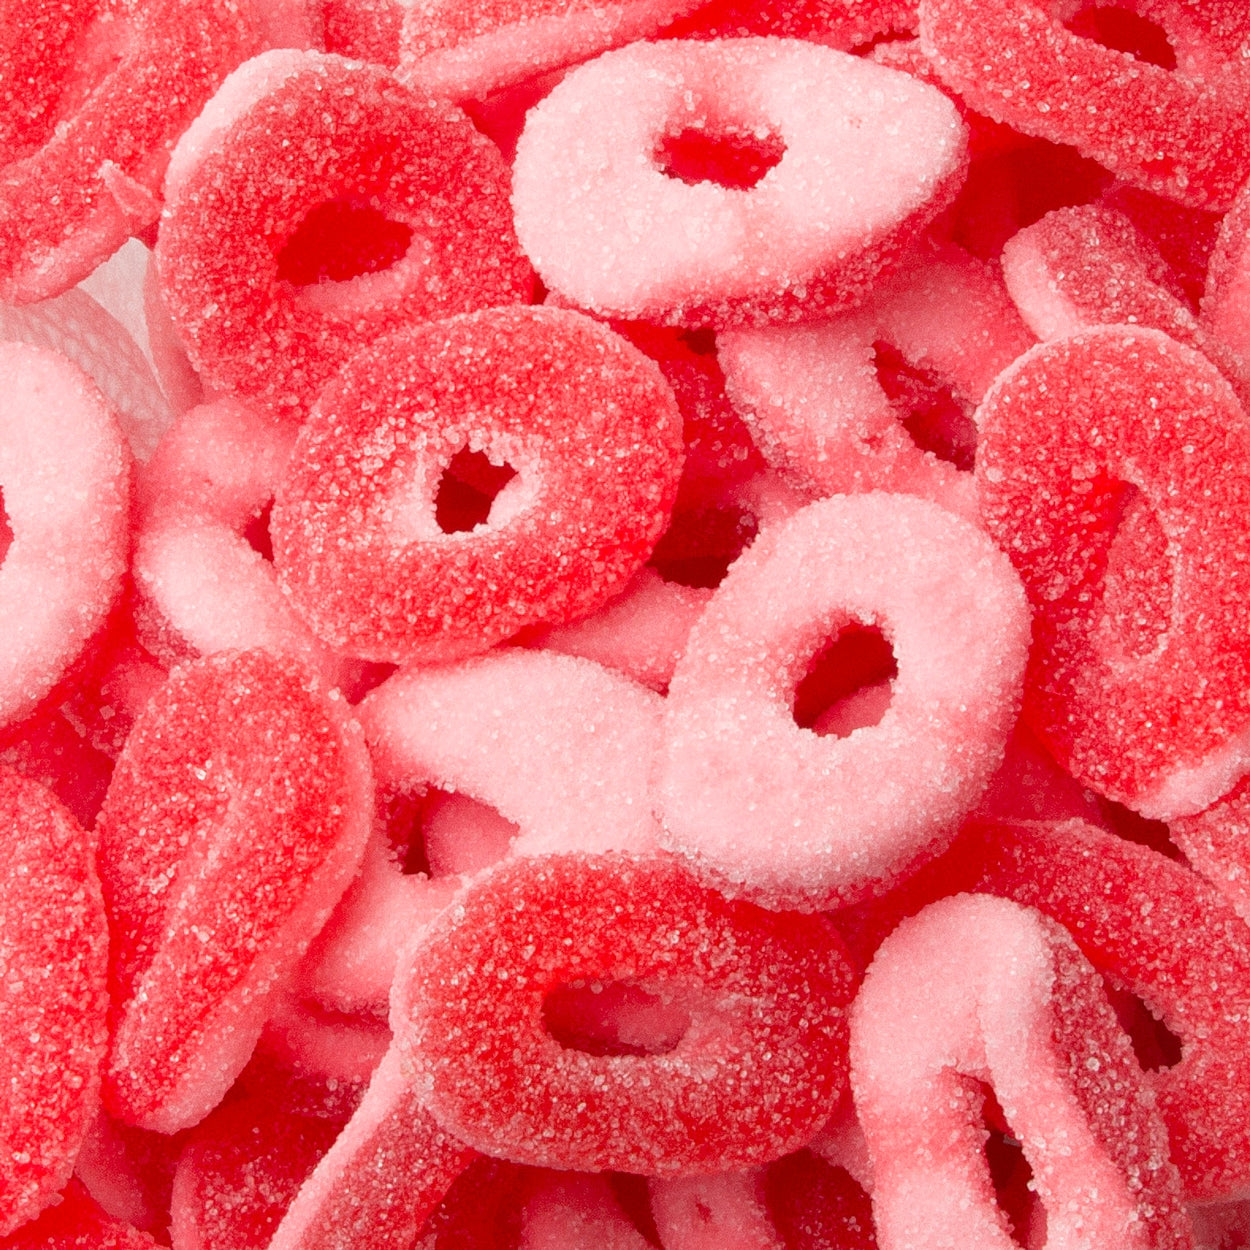 Kervan Strawberry Gummi Rings Bulk Bag 5lb - 1ct